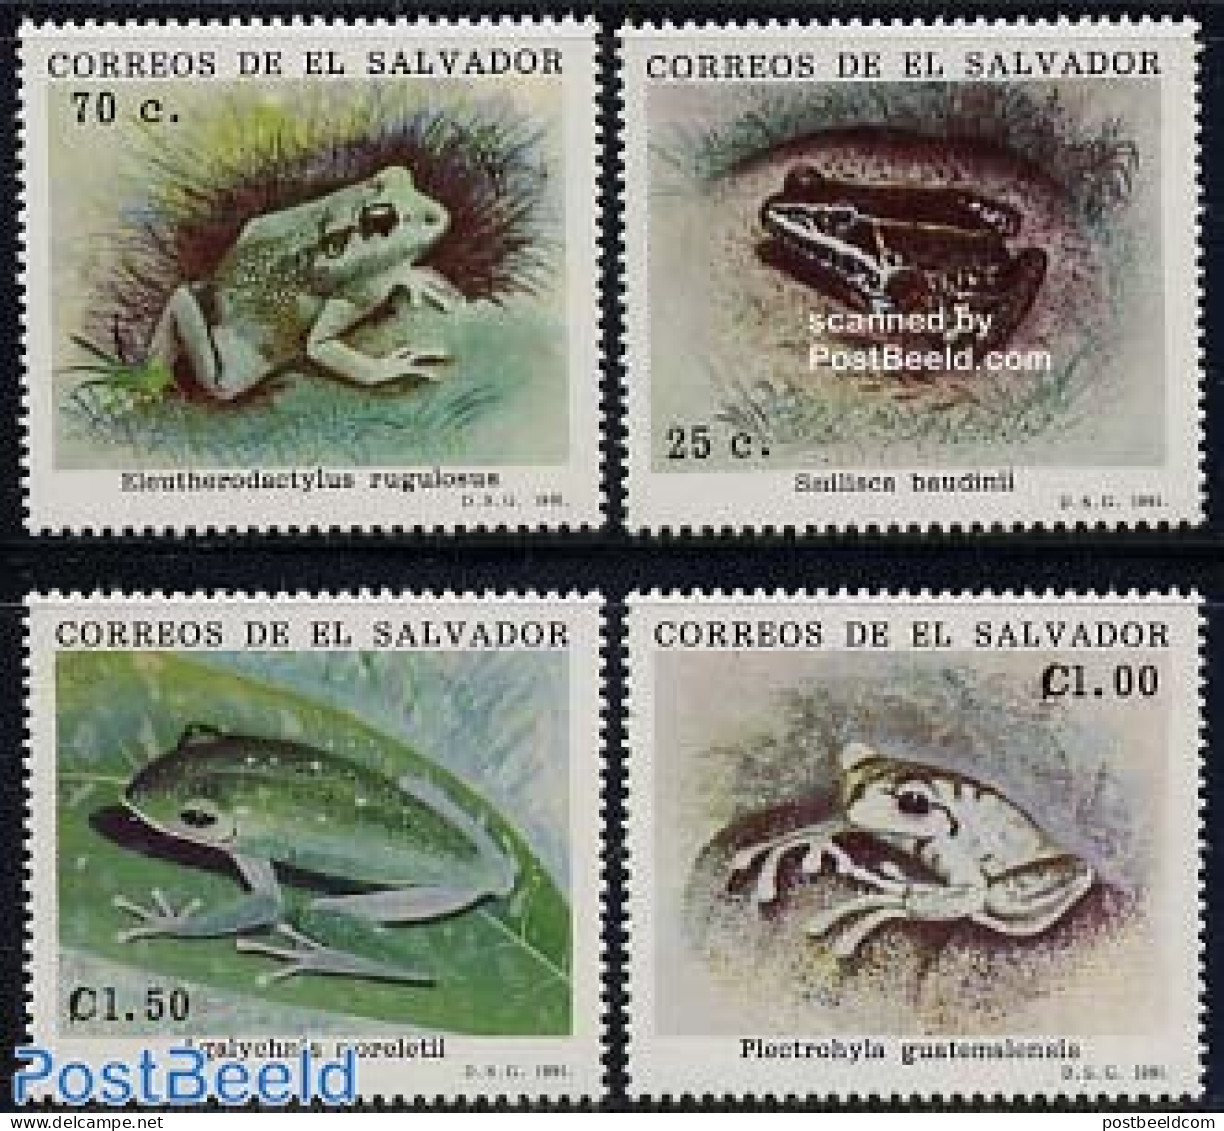 El Salvador 1991 Frogs 4v, Mint NH, Nature - Frogs & Toads - Reptiles - El Salvador